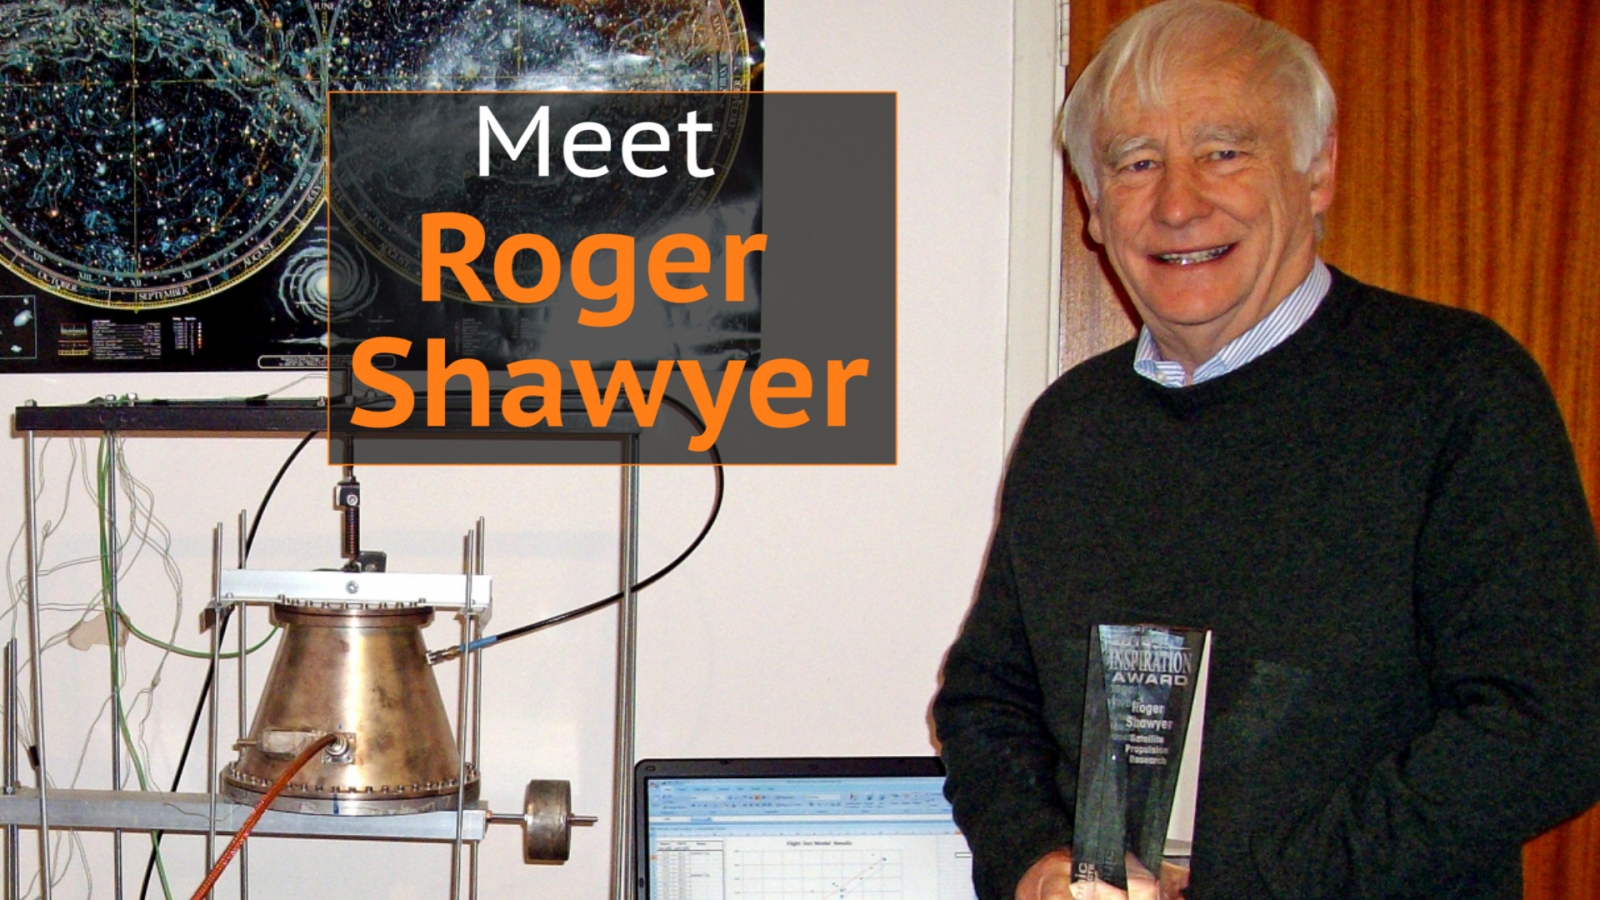 Meet Roger Shawyer